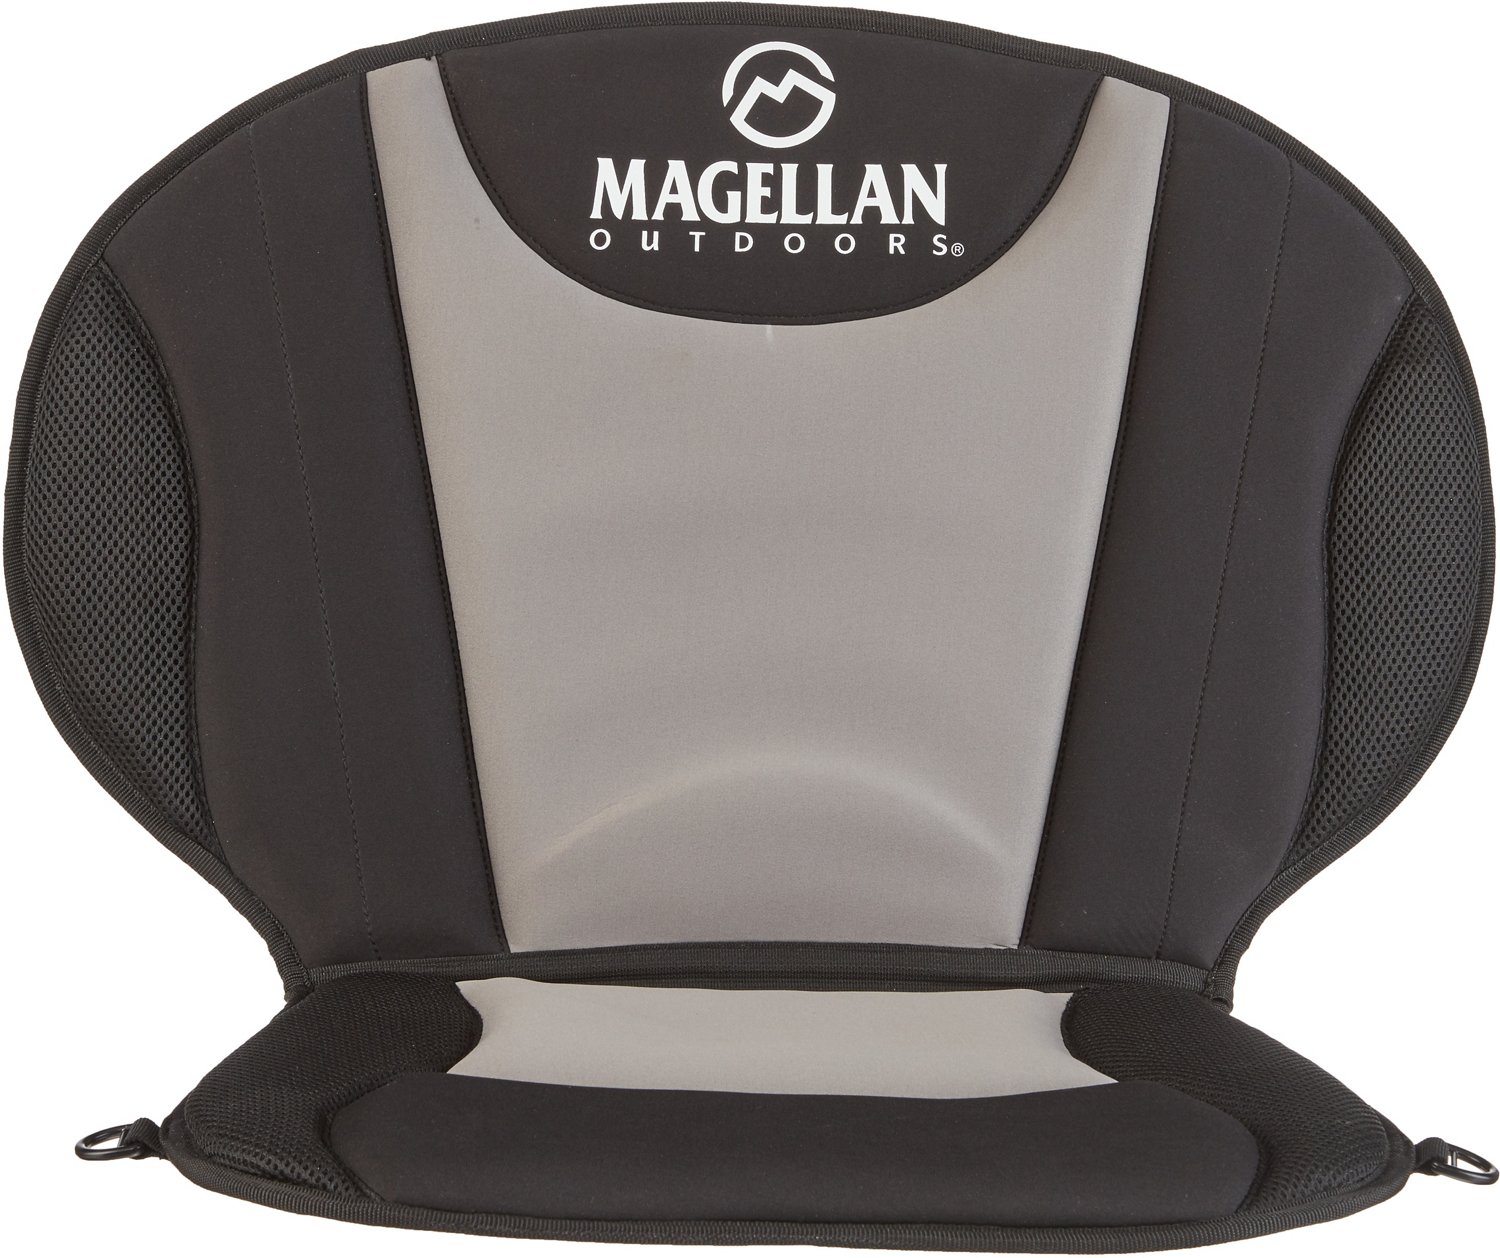 Magellan Outdoors Cayman Kayak Seat                                                                                              - view number 1 selected